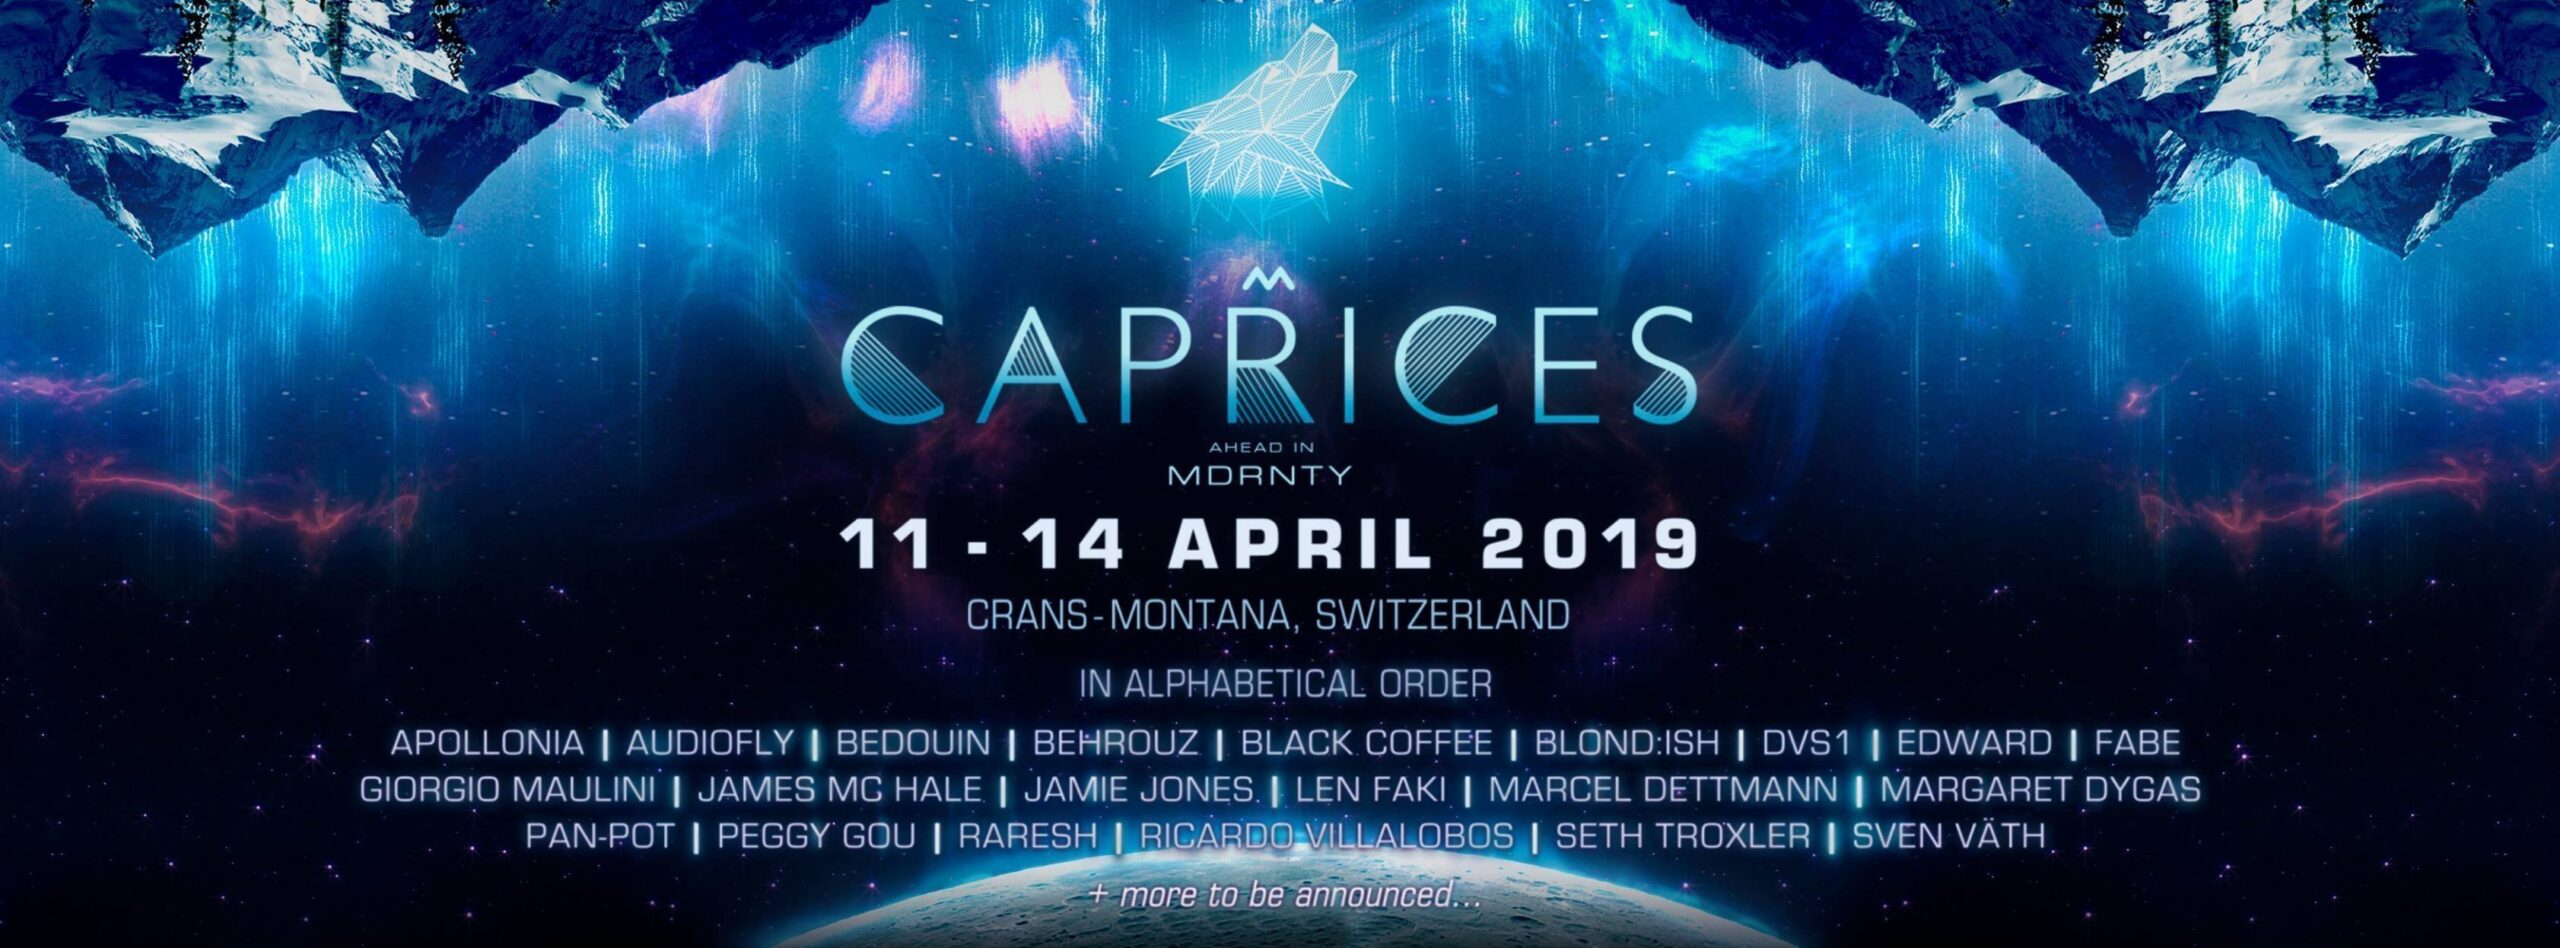 CAPRICES FESTIVAL 11 14 APRILE 2019 TICKET PACCHETTI HOTEL